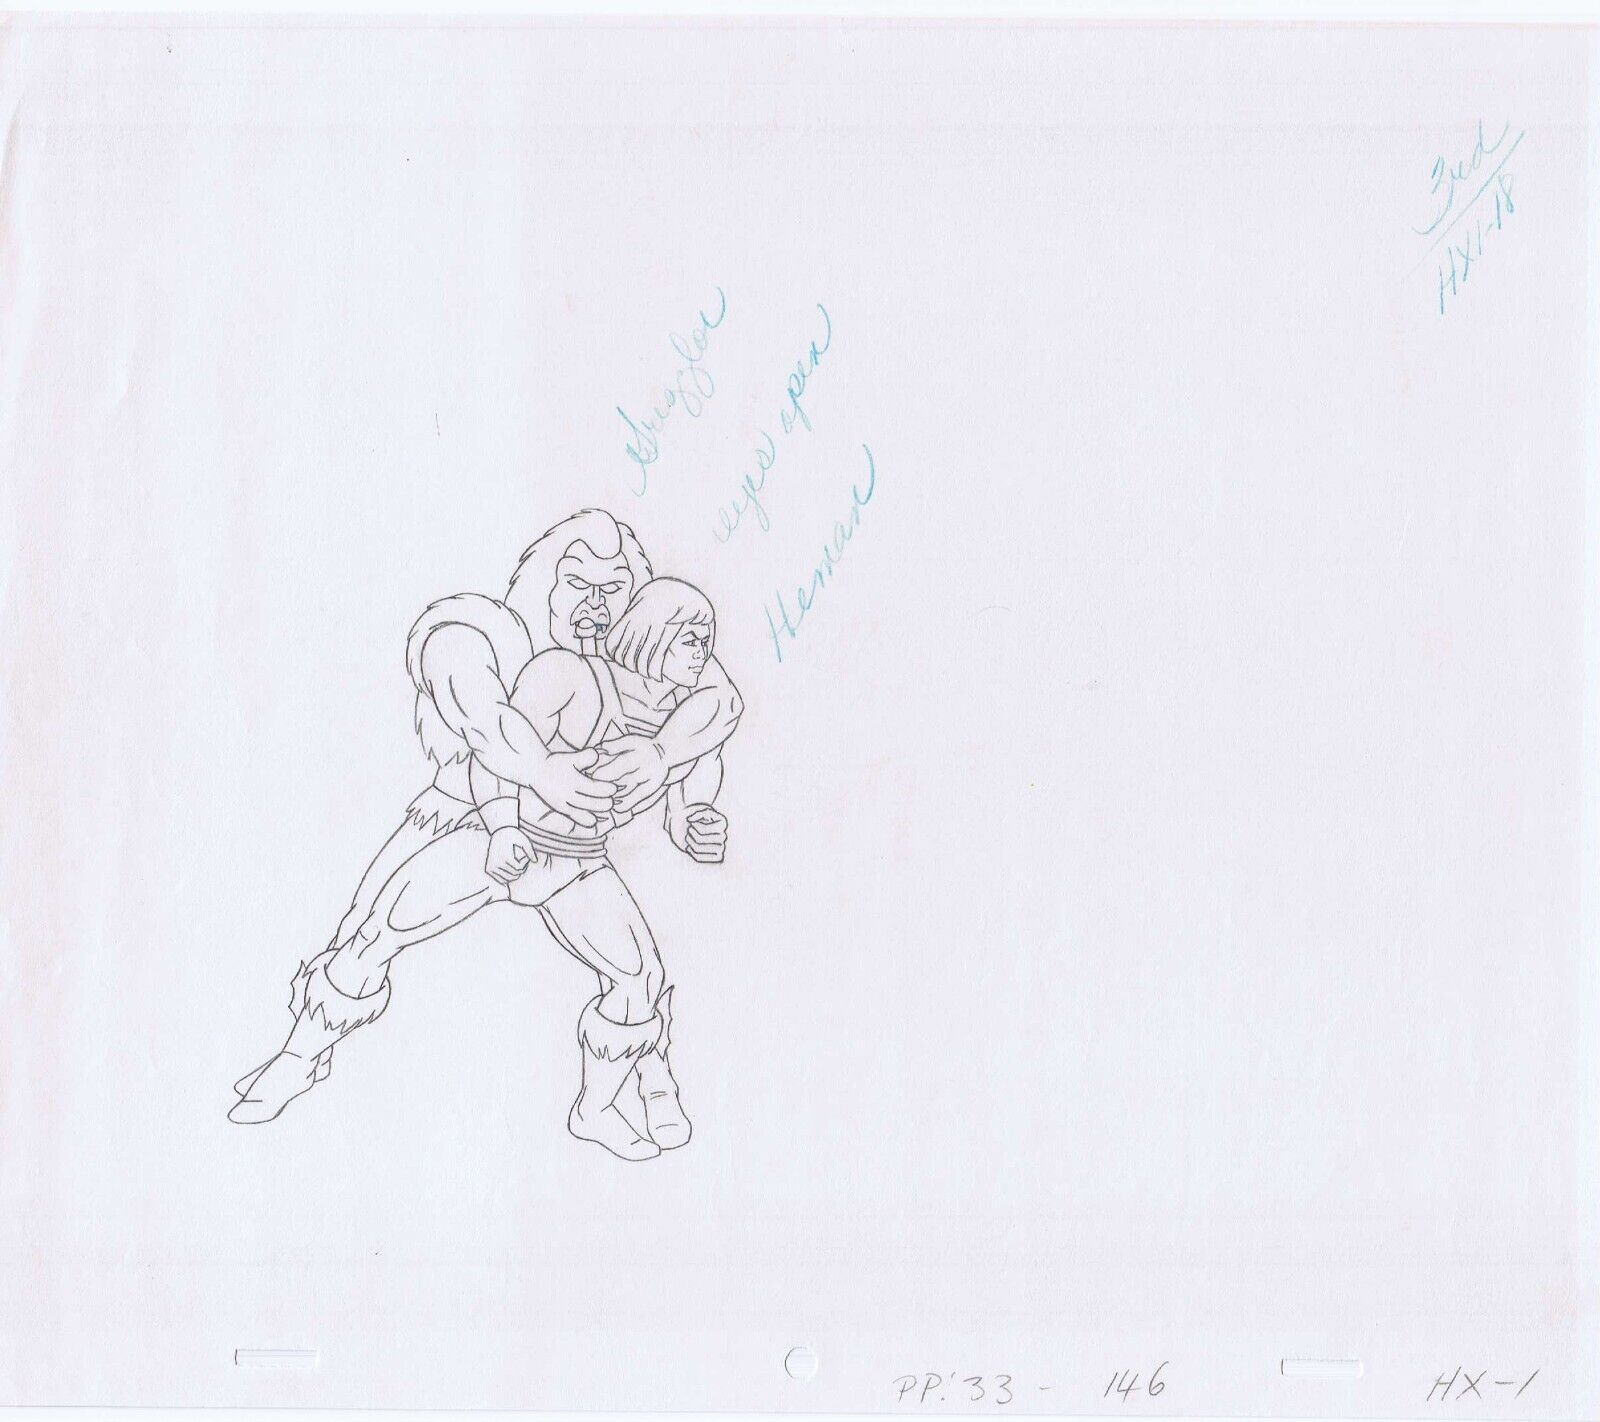 He-Man Grizzlor 1985 Original Art w/COA Animation Production Pencils PP 33 HX-1